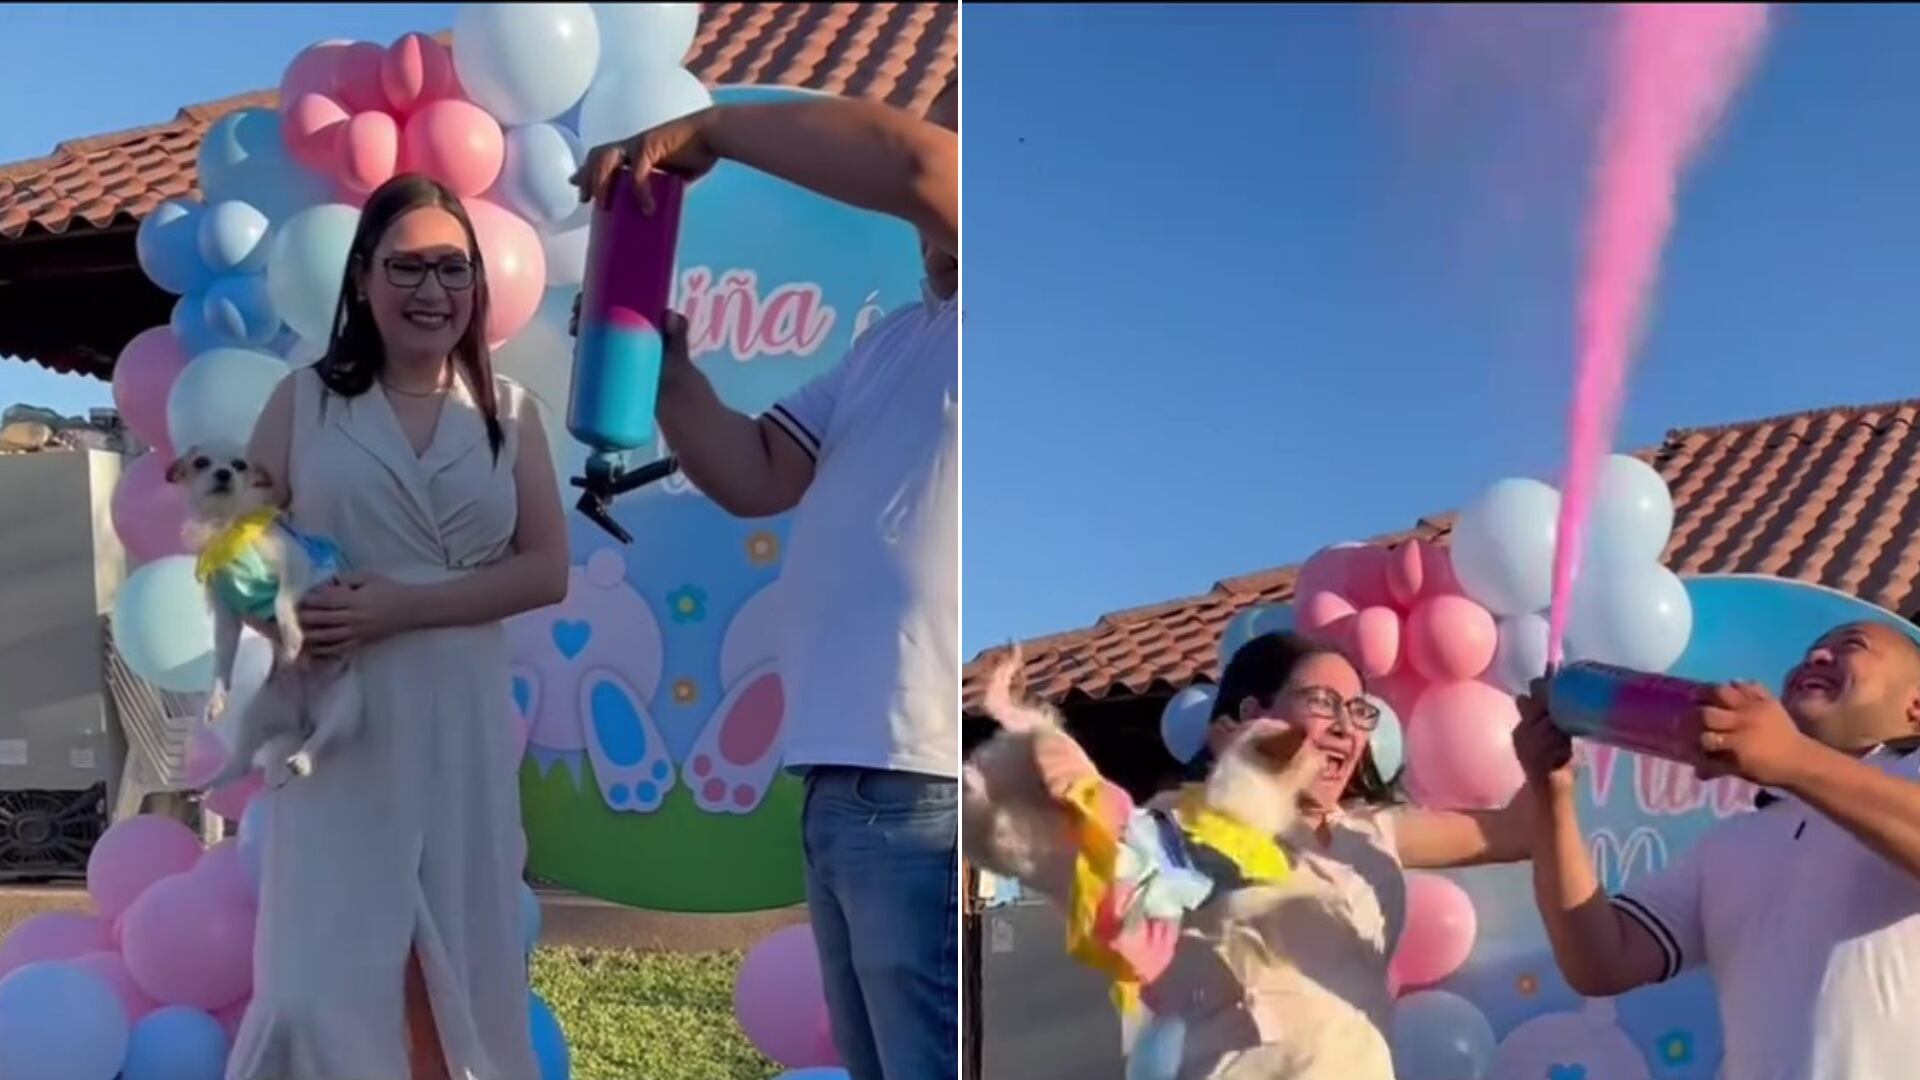 En la imagen capturada del video viral en TikTok, se observa a una pareja en el momento previo al anuncio que revelará el género de su futuro hijo